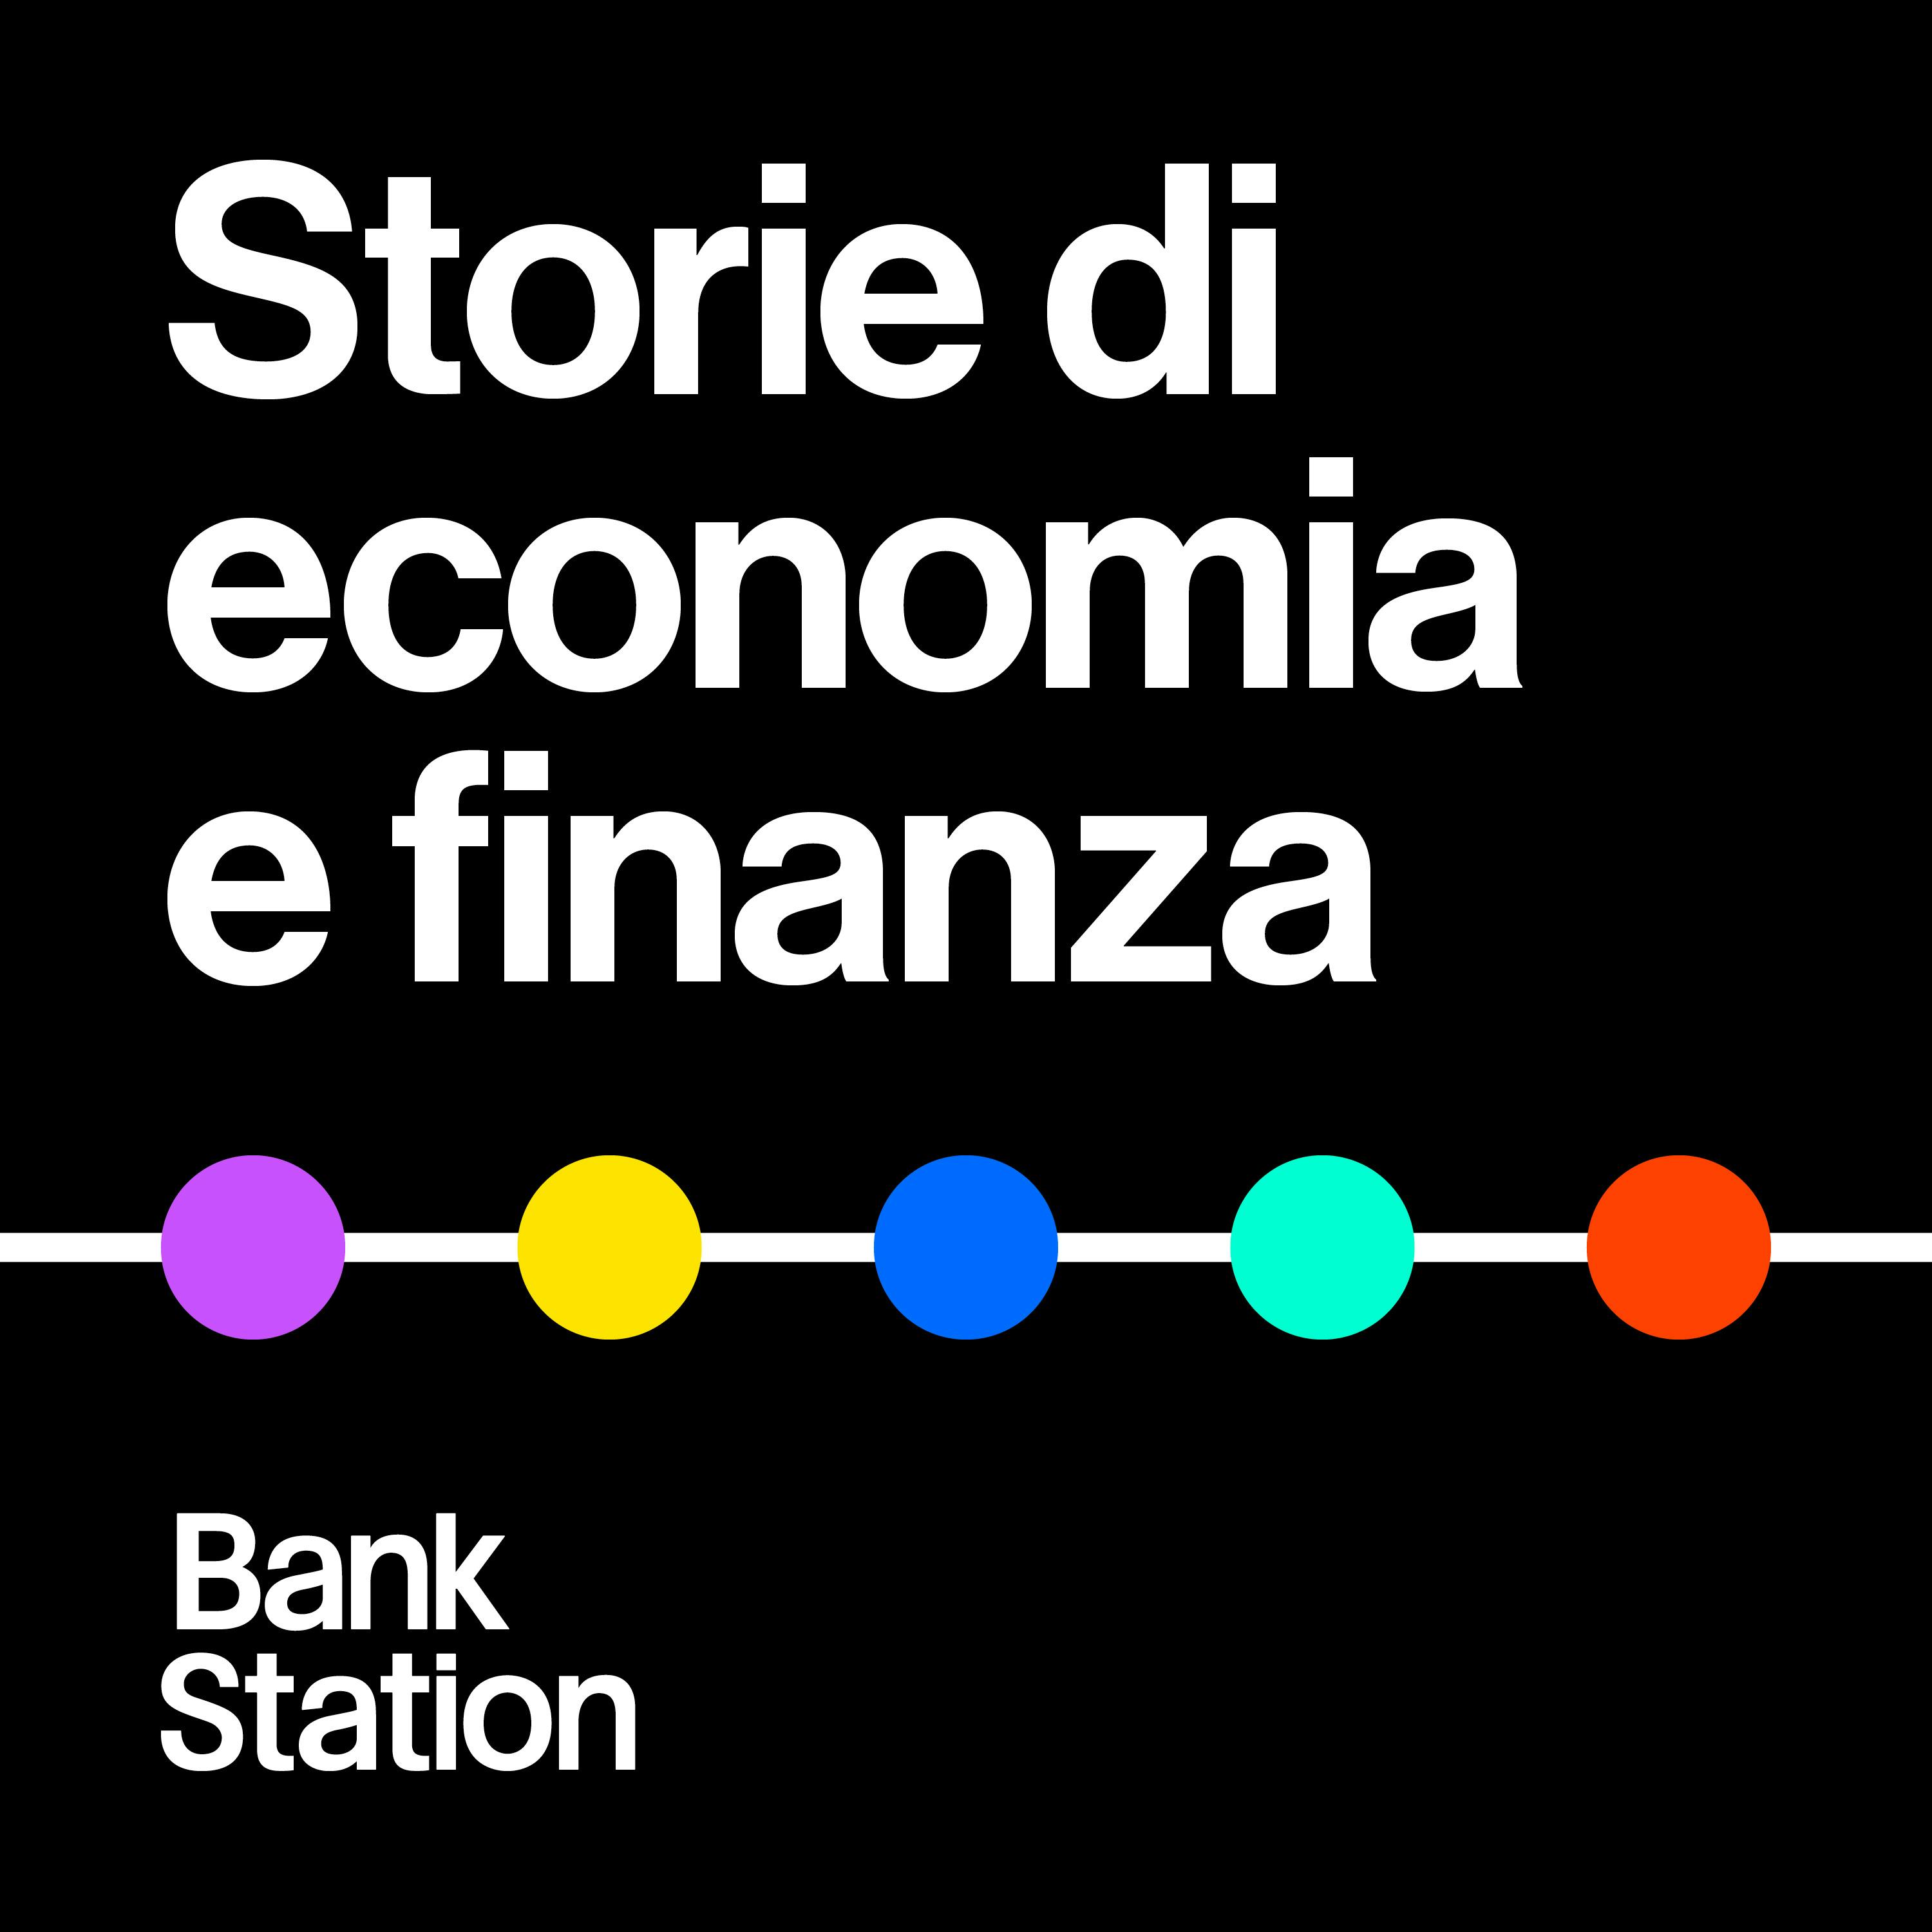 Trailer: Bank Station – Storie di economia e finanza